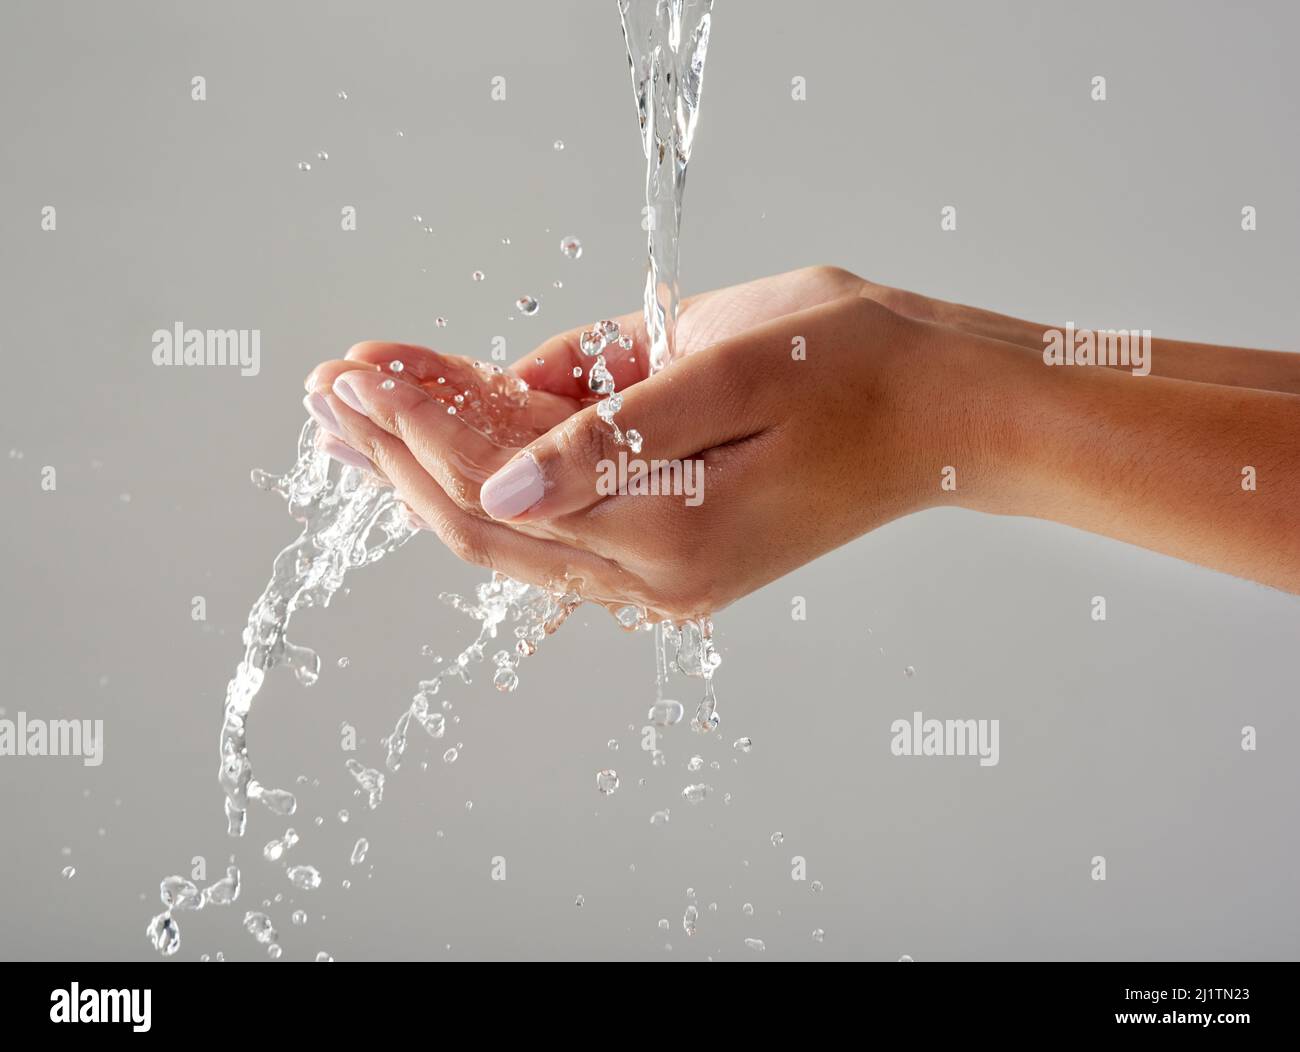 Pureza en la palma de sus manos. Foto recortada de las manos sujetada bajo una corriente de agua sobre un fondo gris. Foto de stock